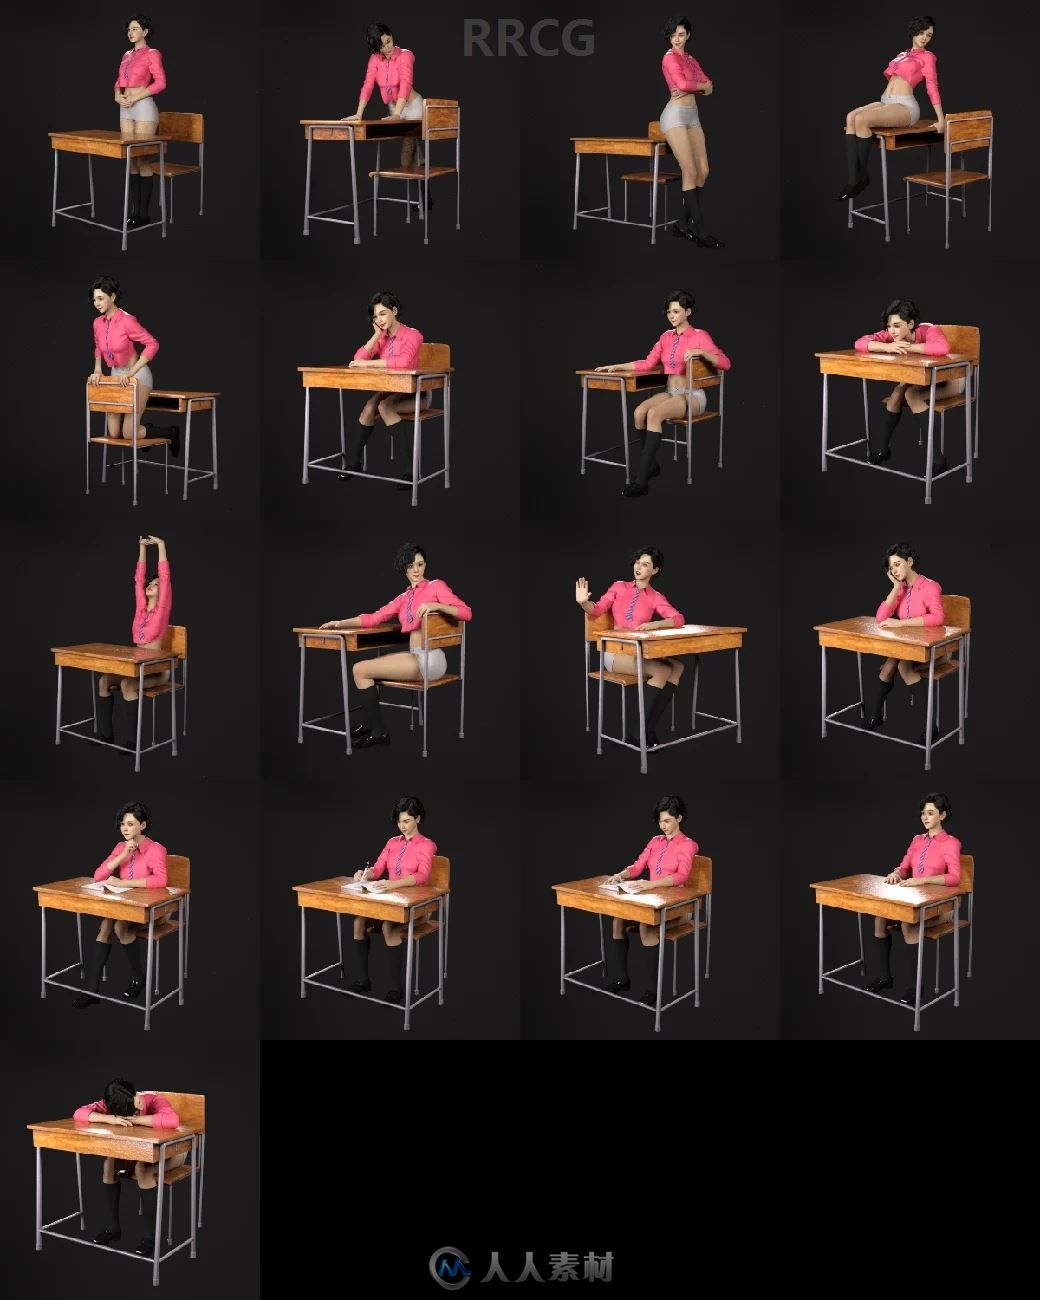 学校走廊教室室内道具模型日系校服女学生姿势3D模型合集